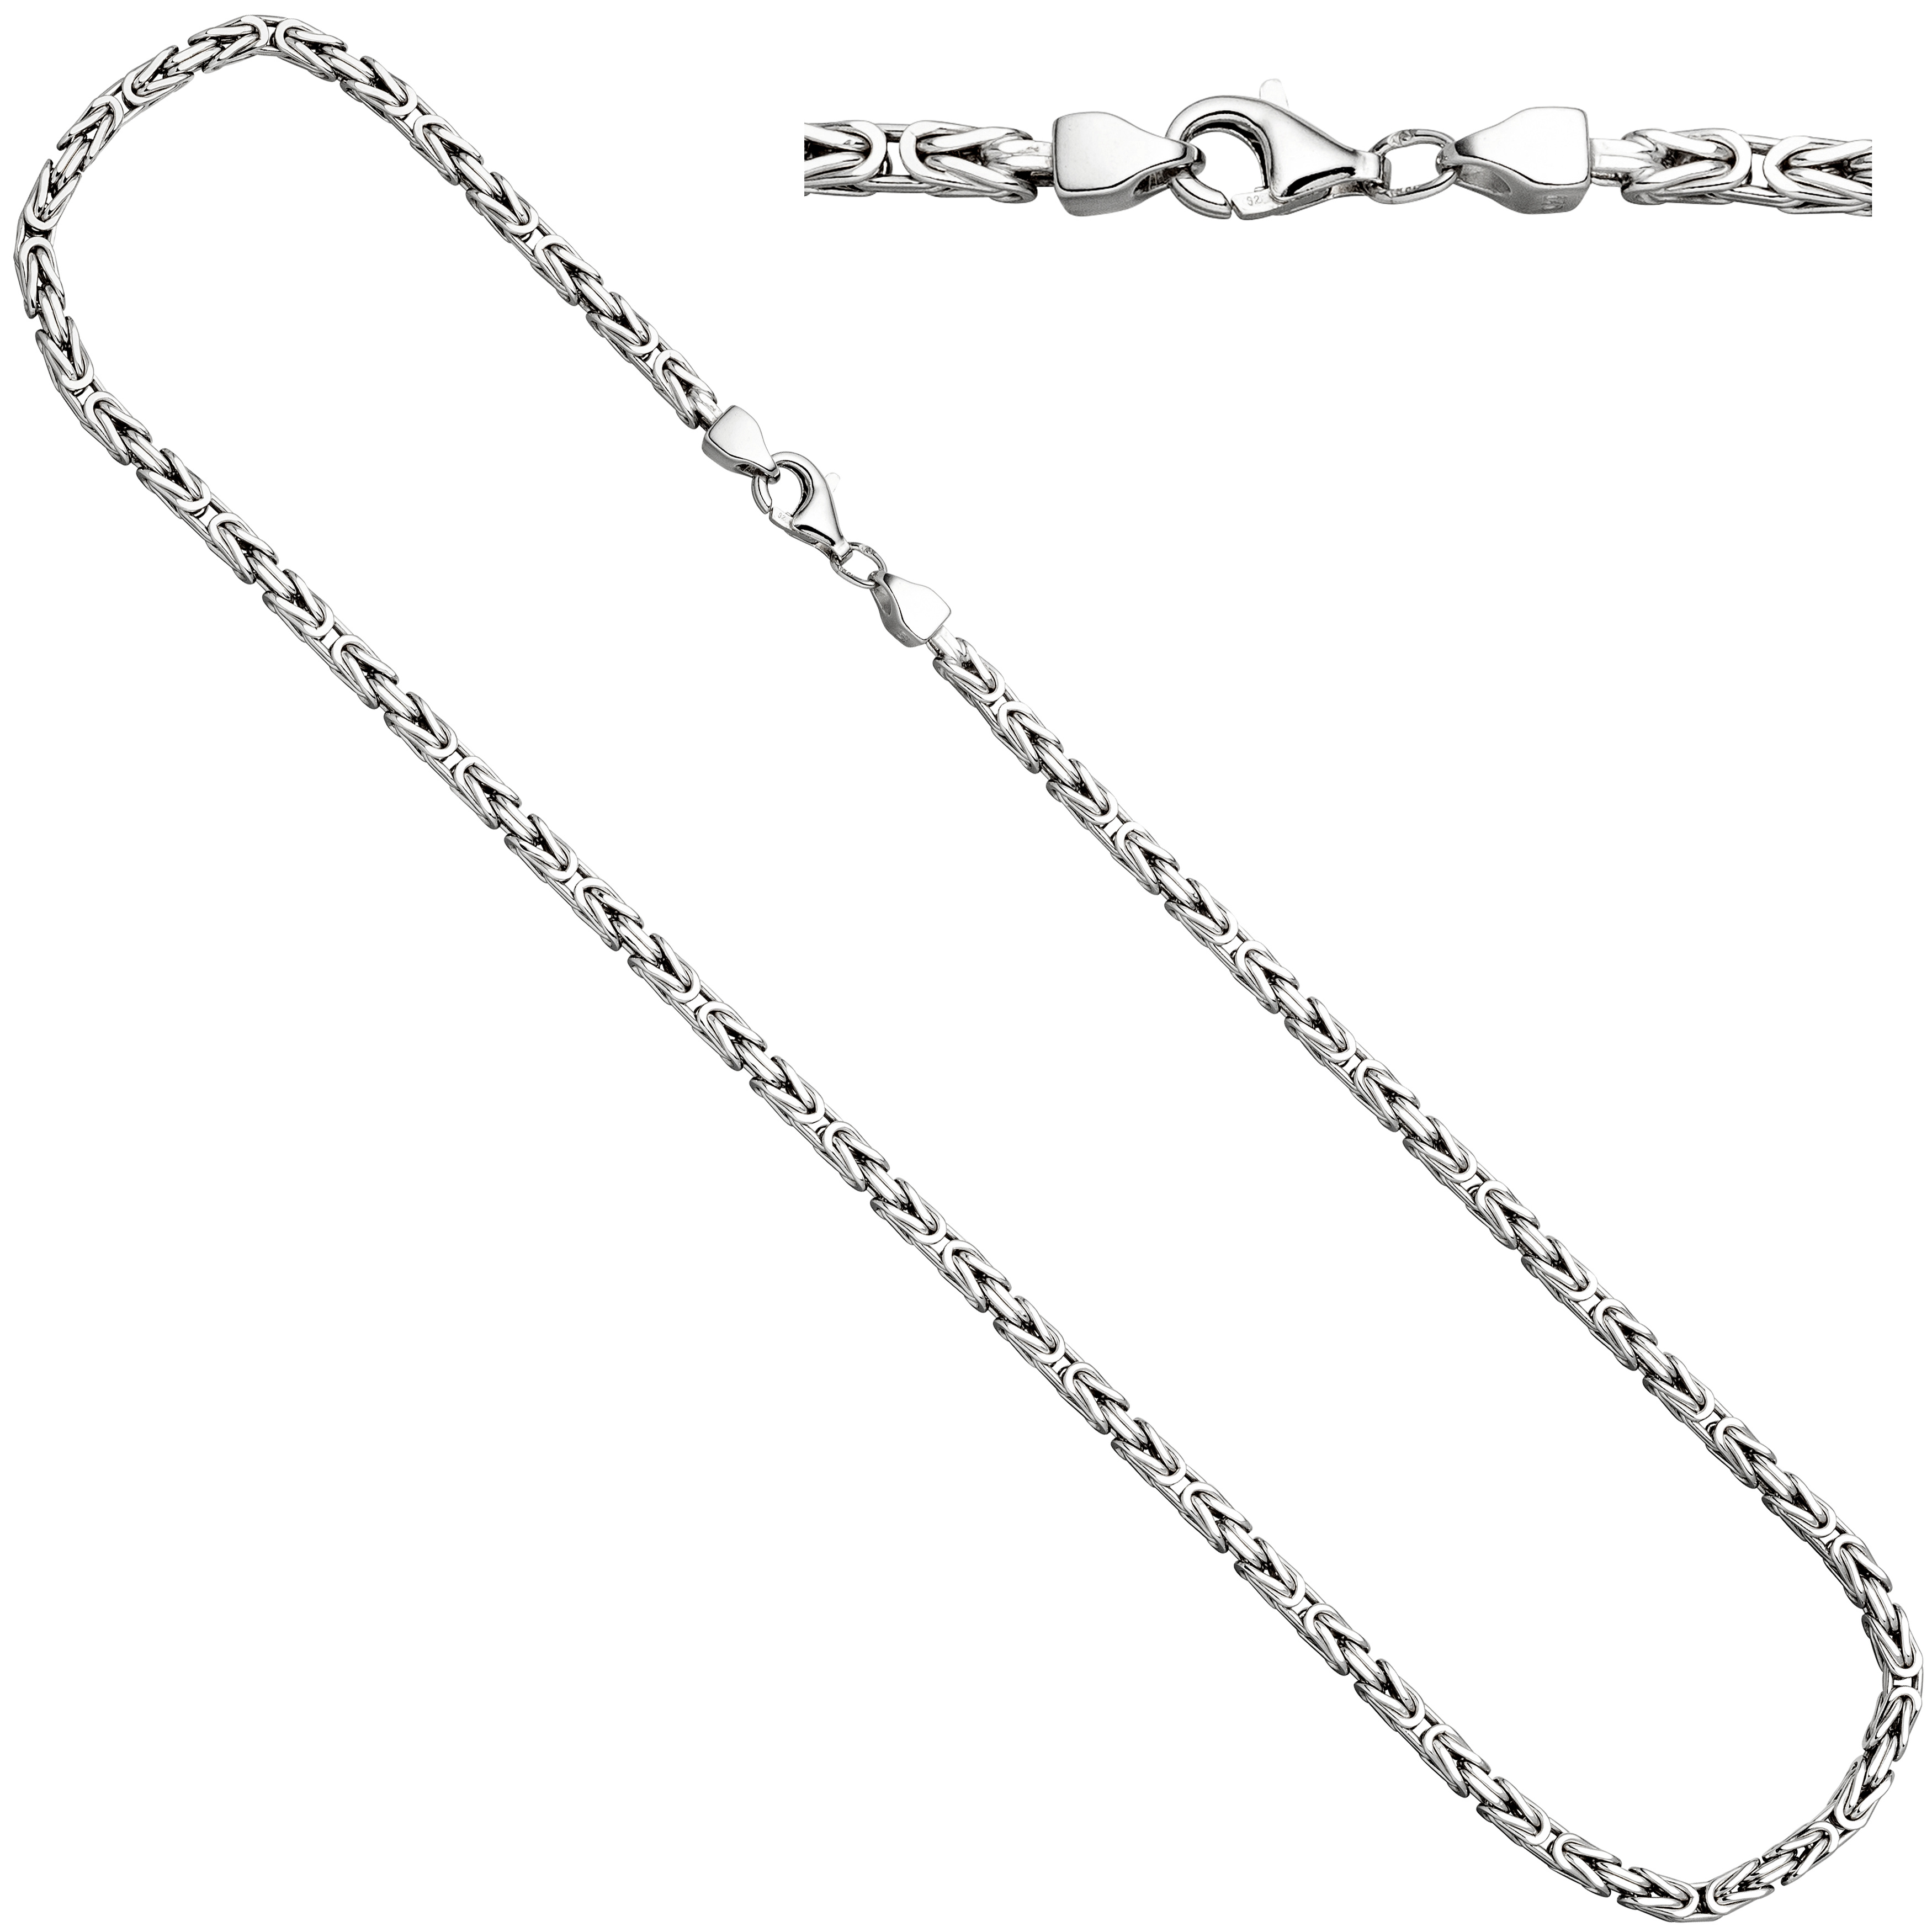 Königskette 925 Sterling Silber rhodiniert 45 cm Karabiner Halskette Kette